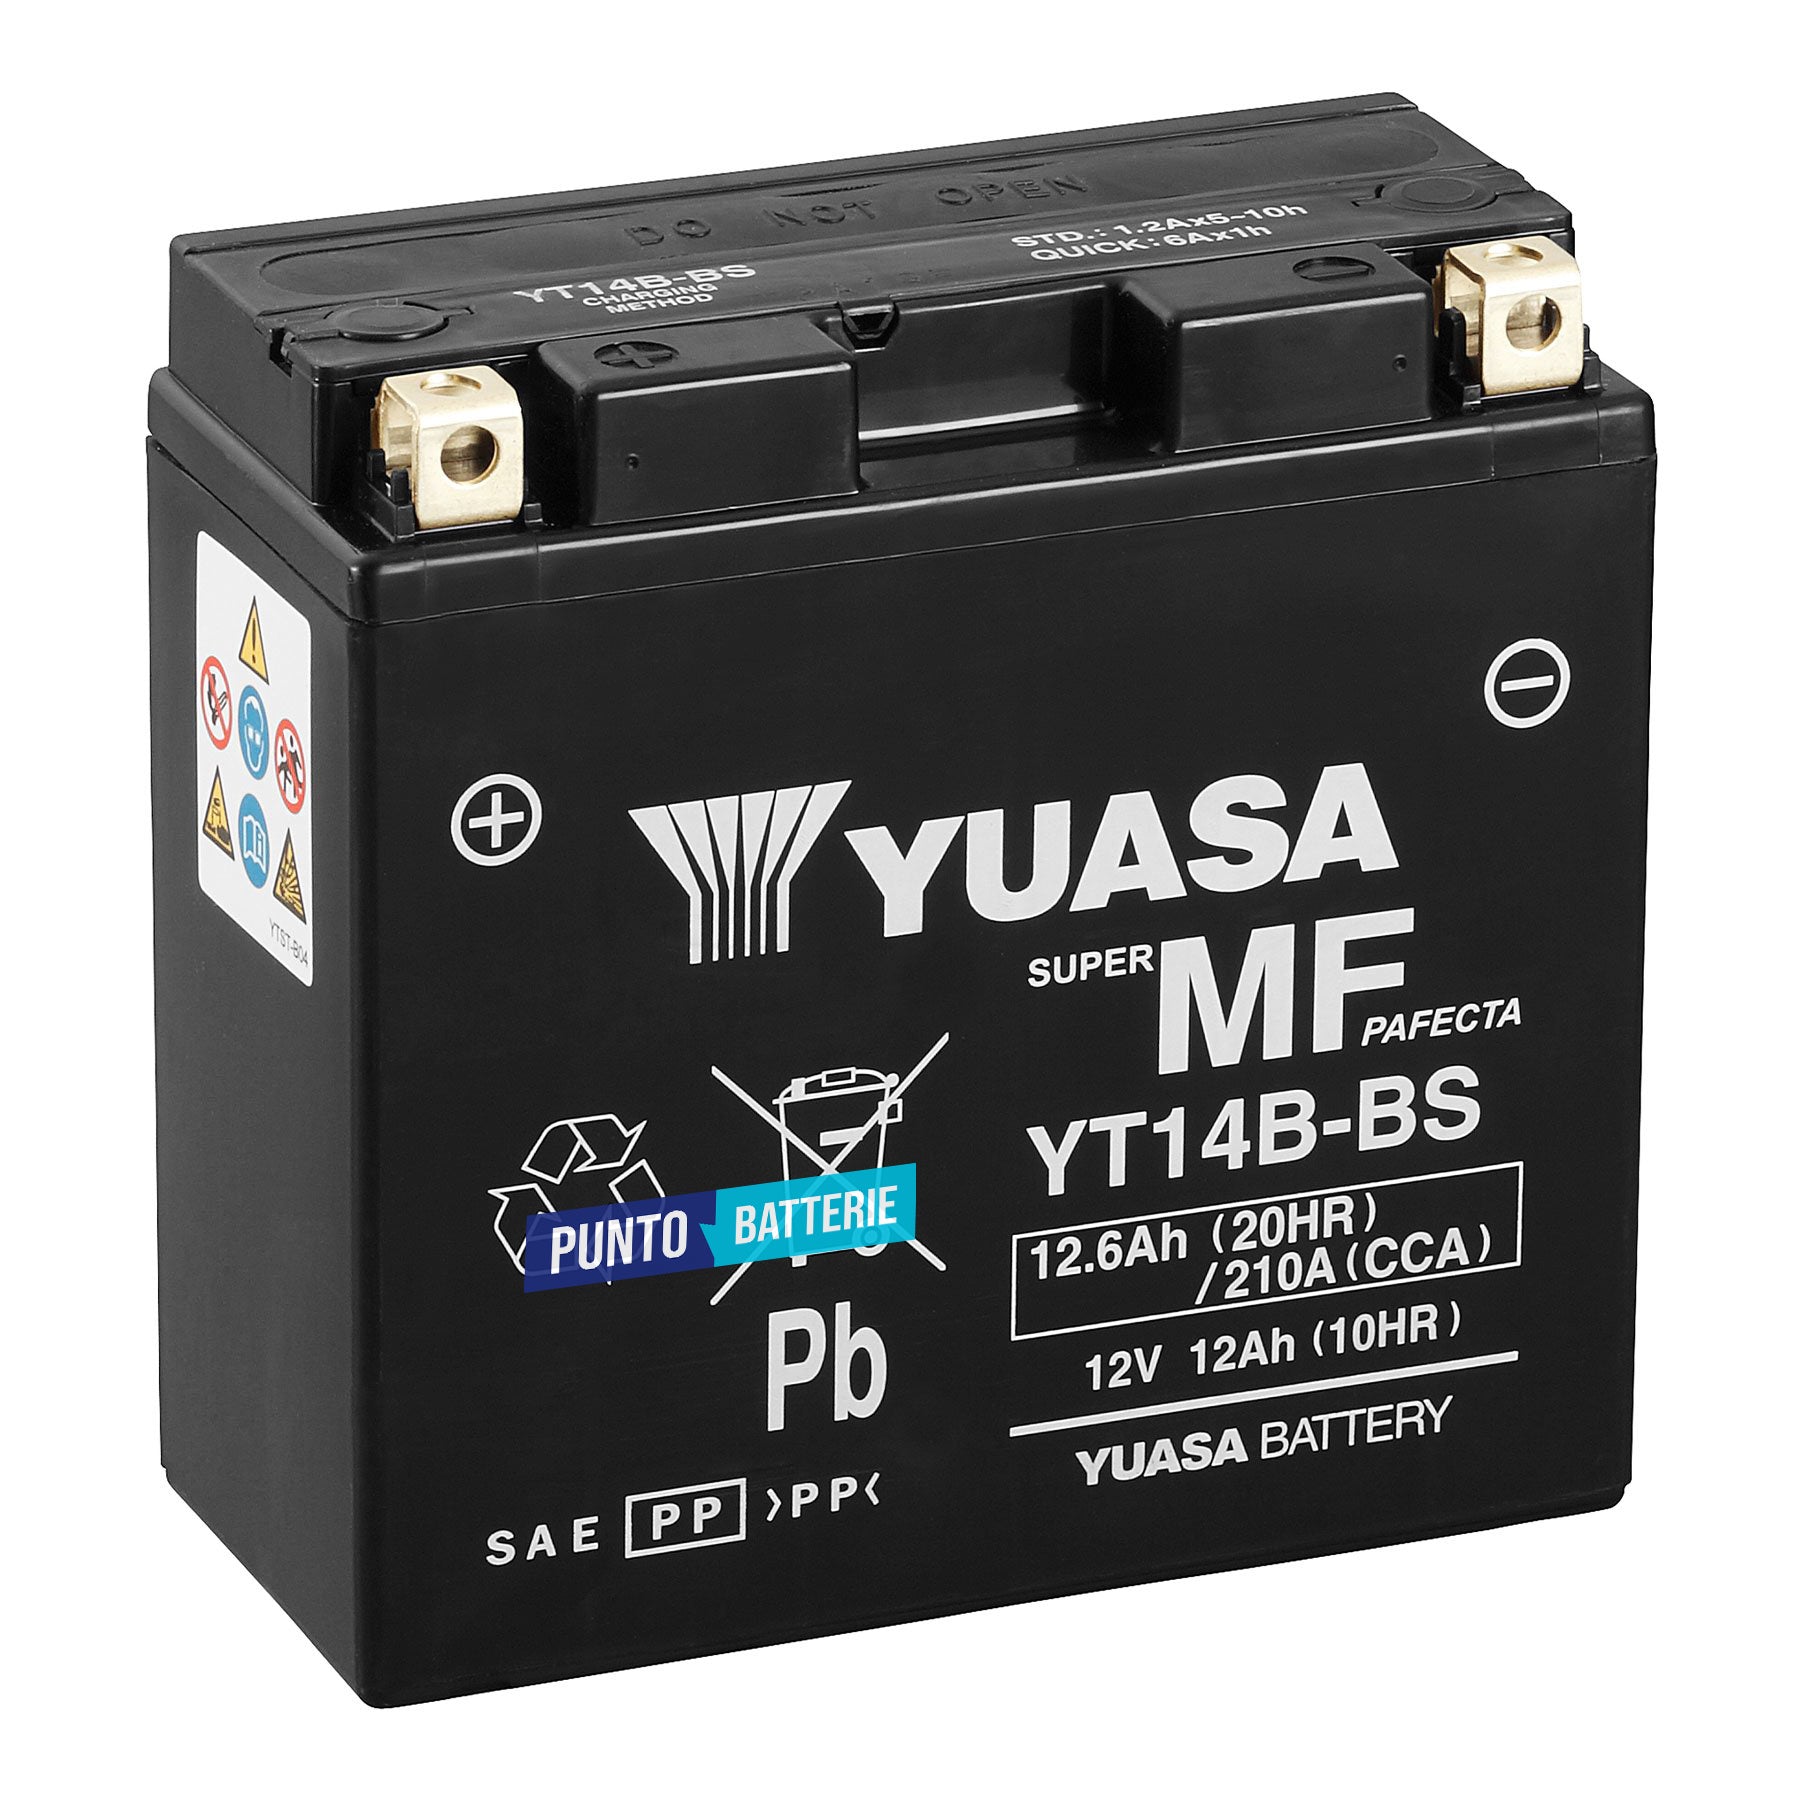 Batteria originale Yuasa YT YT14B-BS, dimensioni 150 x 70 x 145, polo positivo a sinistra, 12 volt, 12 amperora, 210 ampere. Batteria per moto, scooter e powersport.